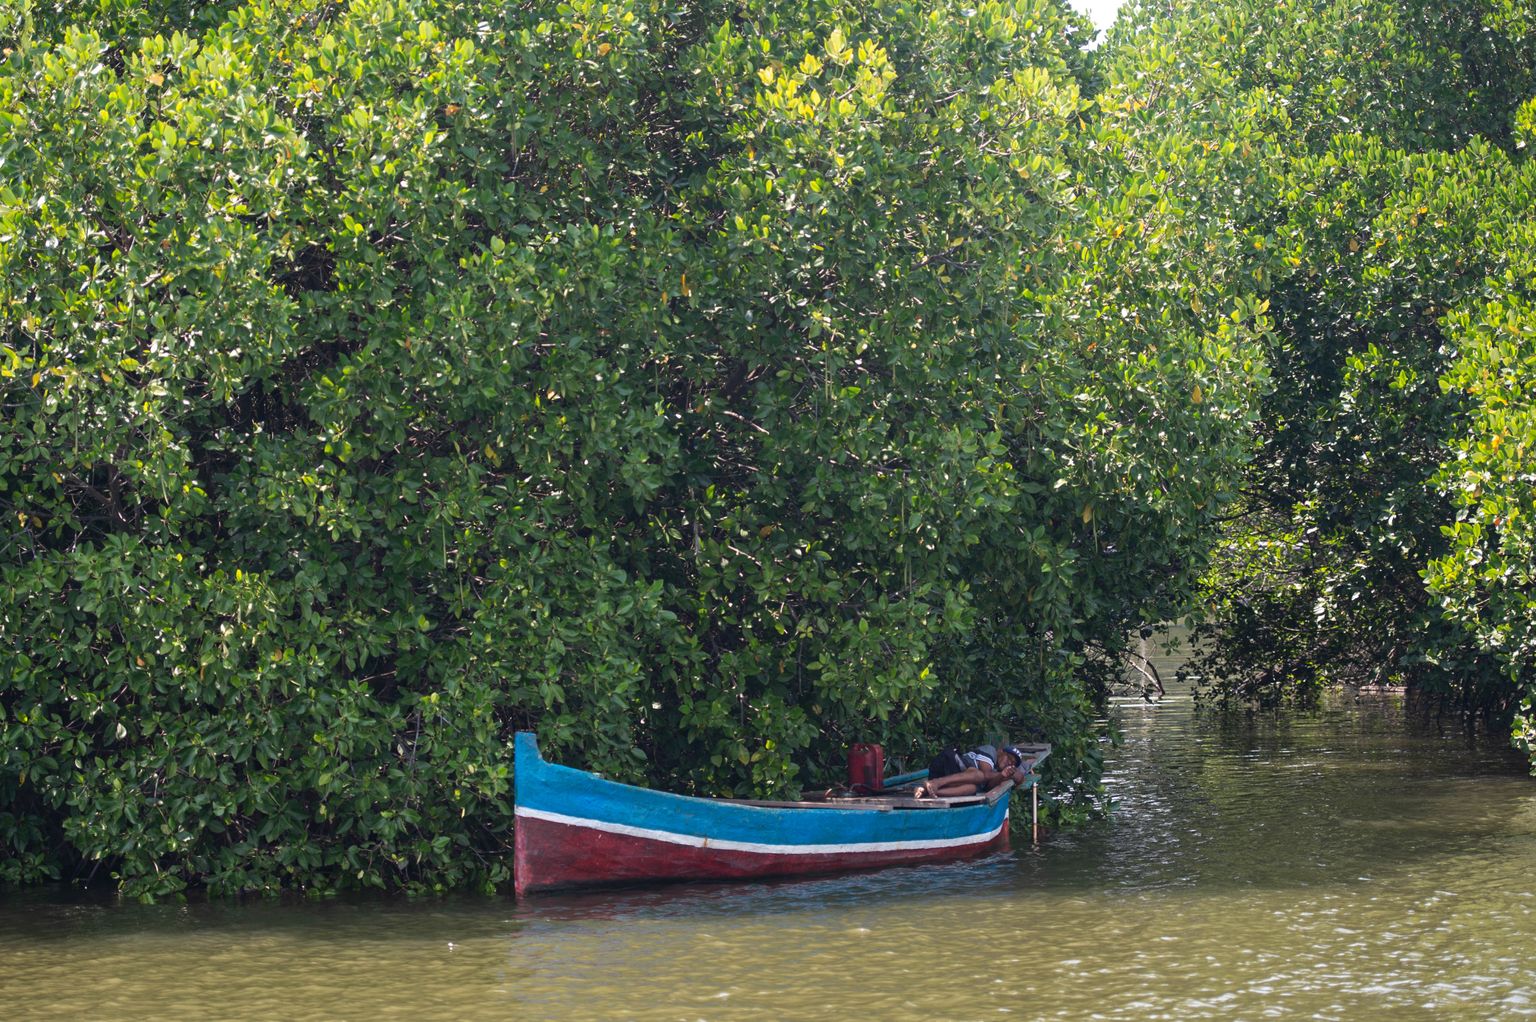 Kalur magab mangroovimetsas oma paadis. Foto on illustreeriv.